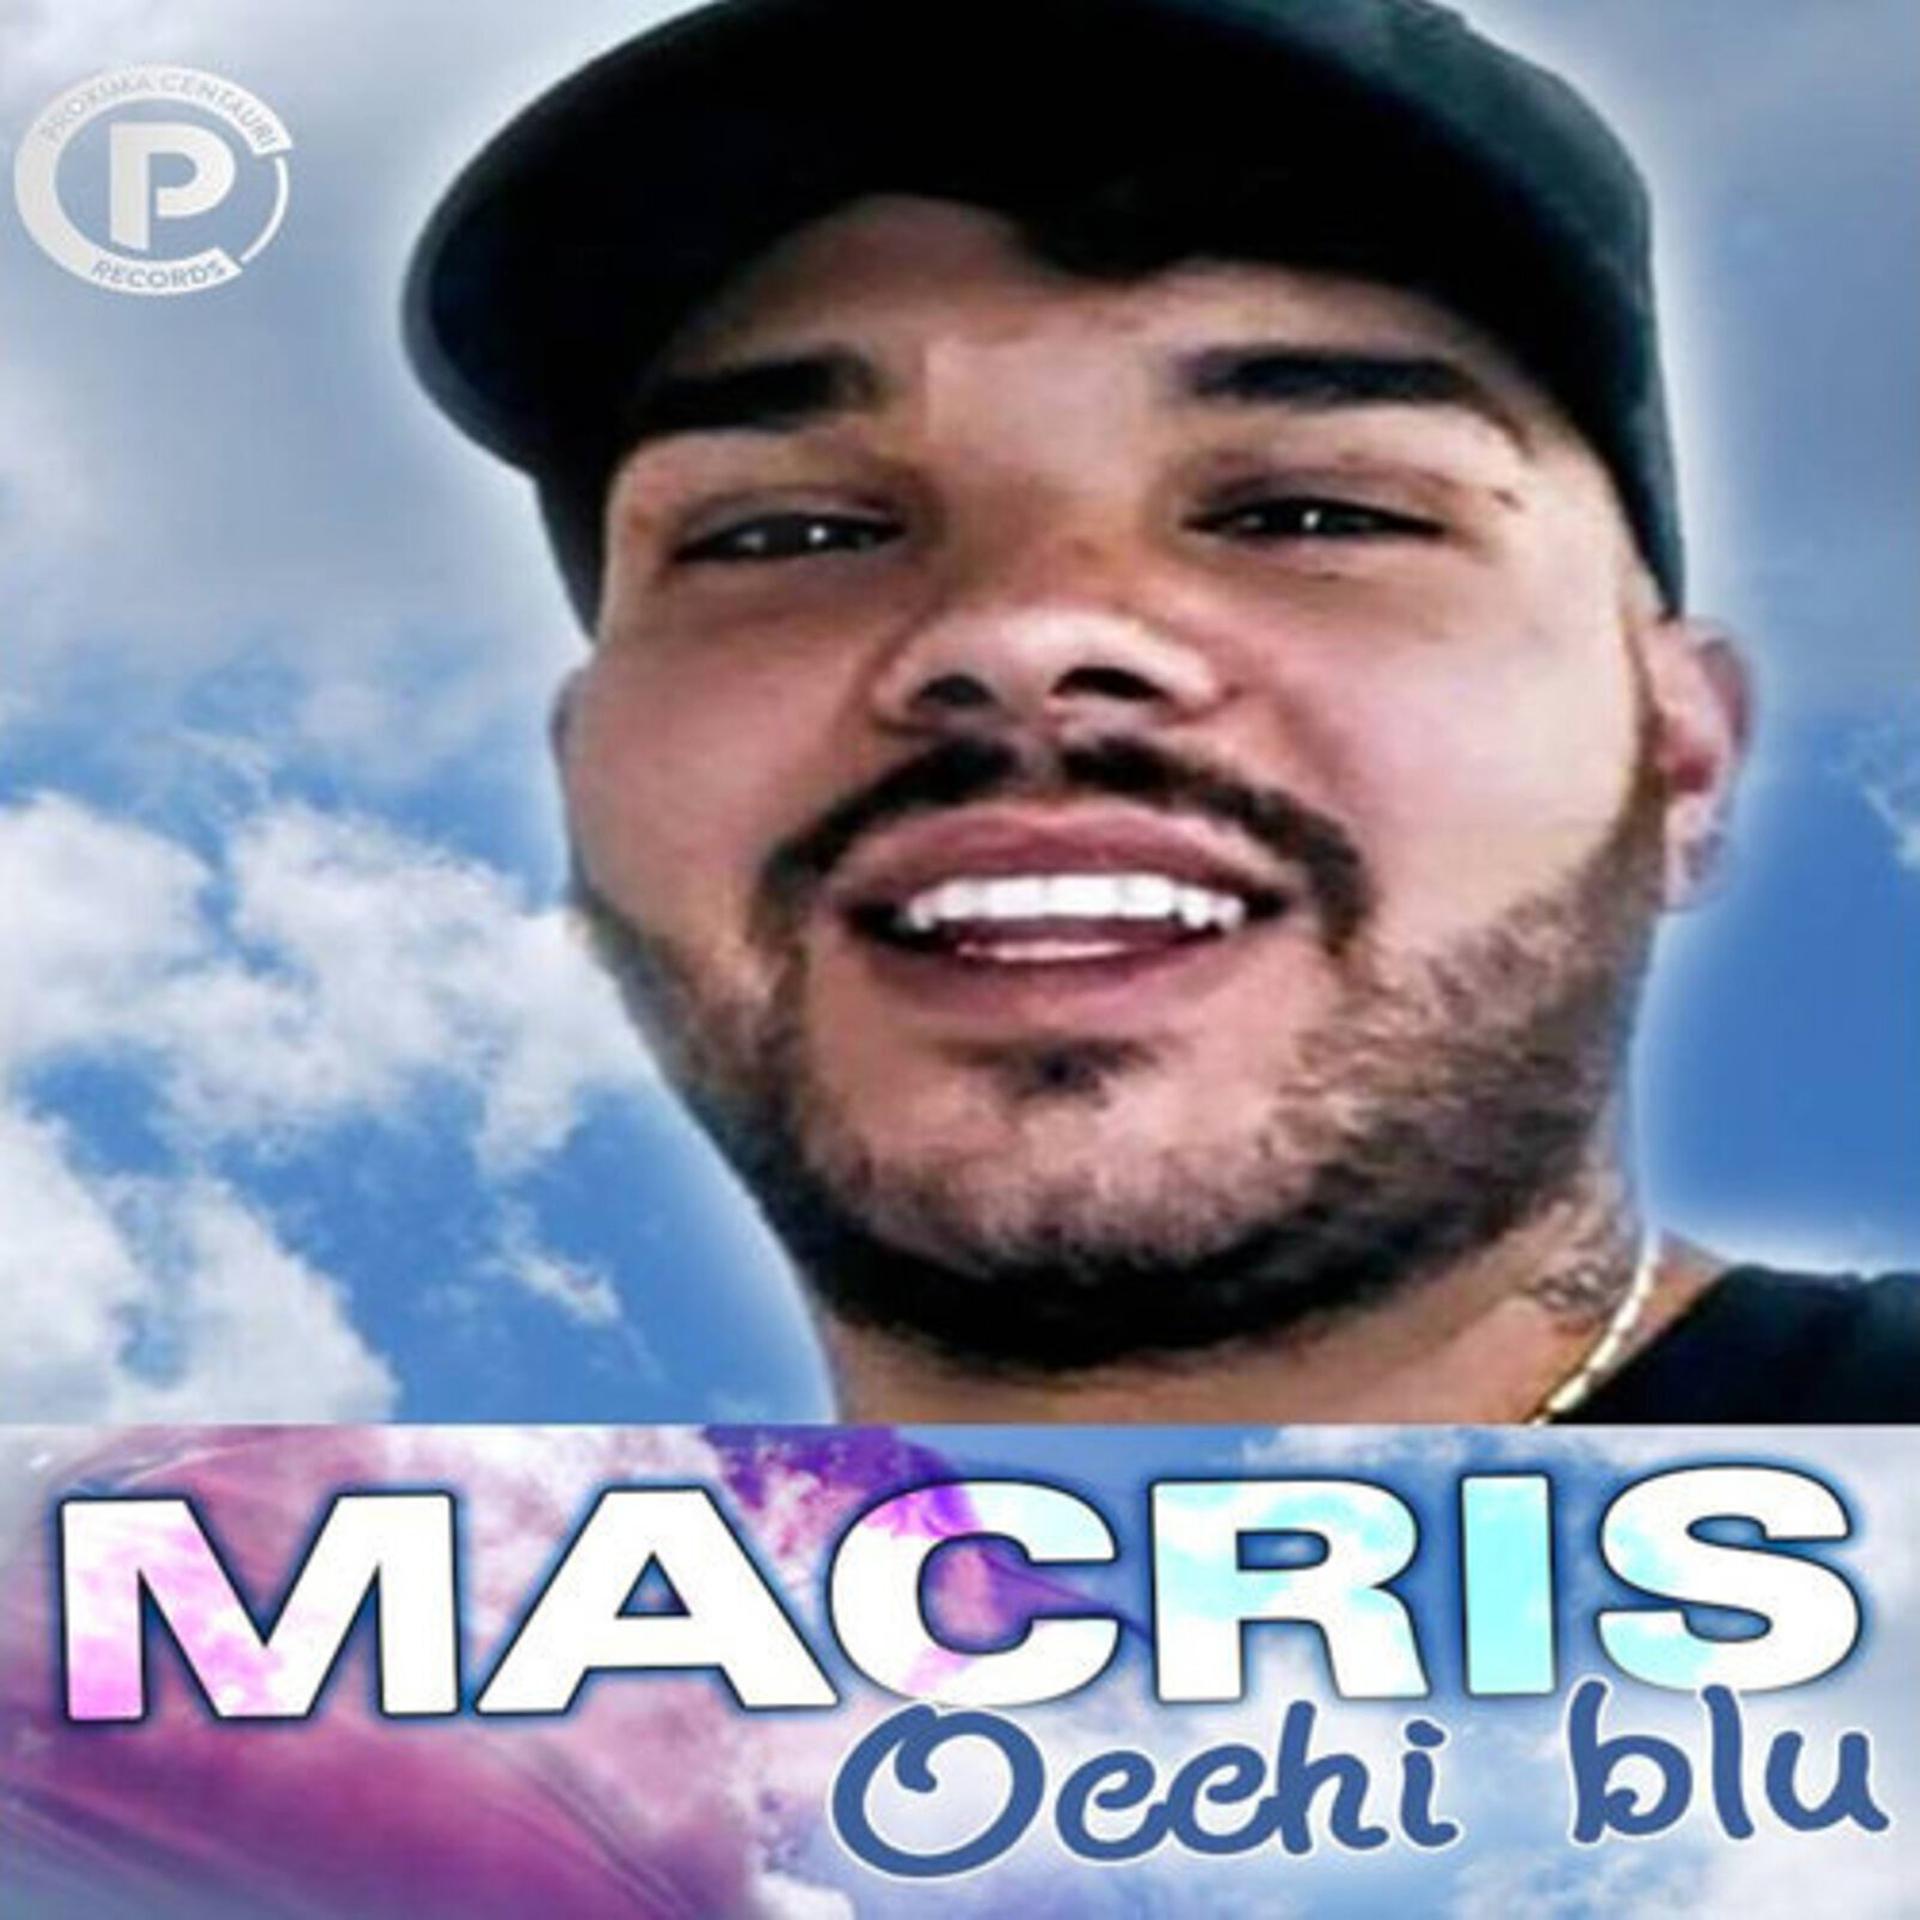 Постер альбома Occhi blu